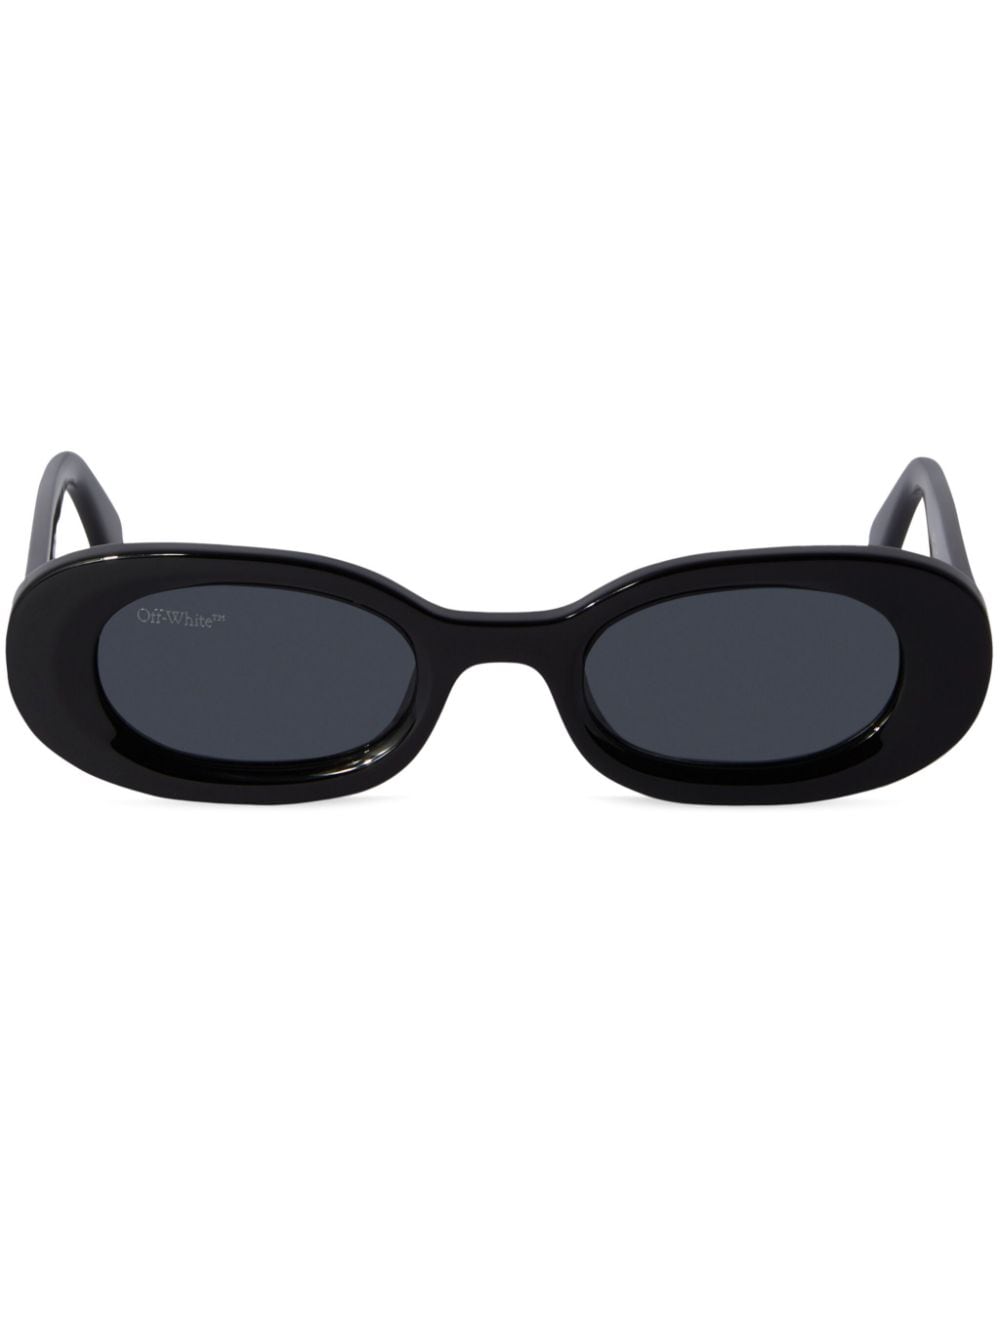 Off-White Amalfi oval-frame sunglasses - Black von Off-White